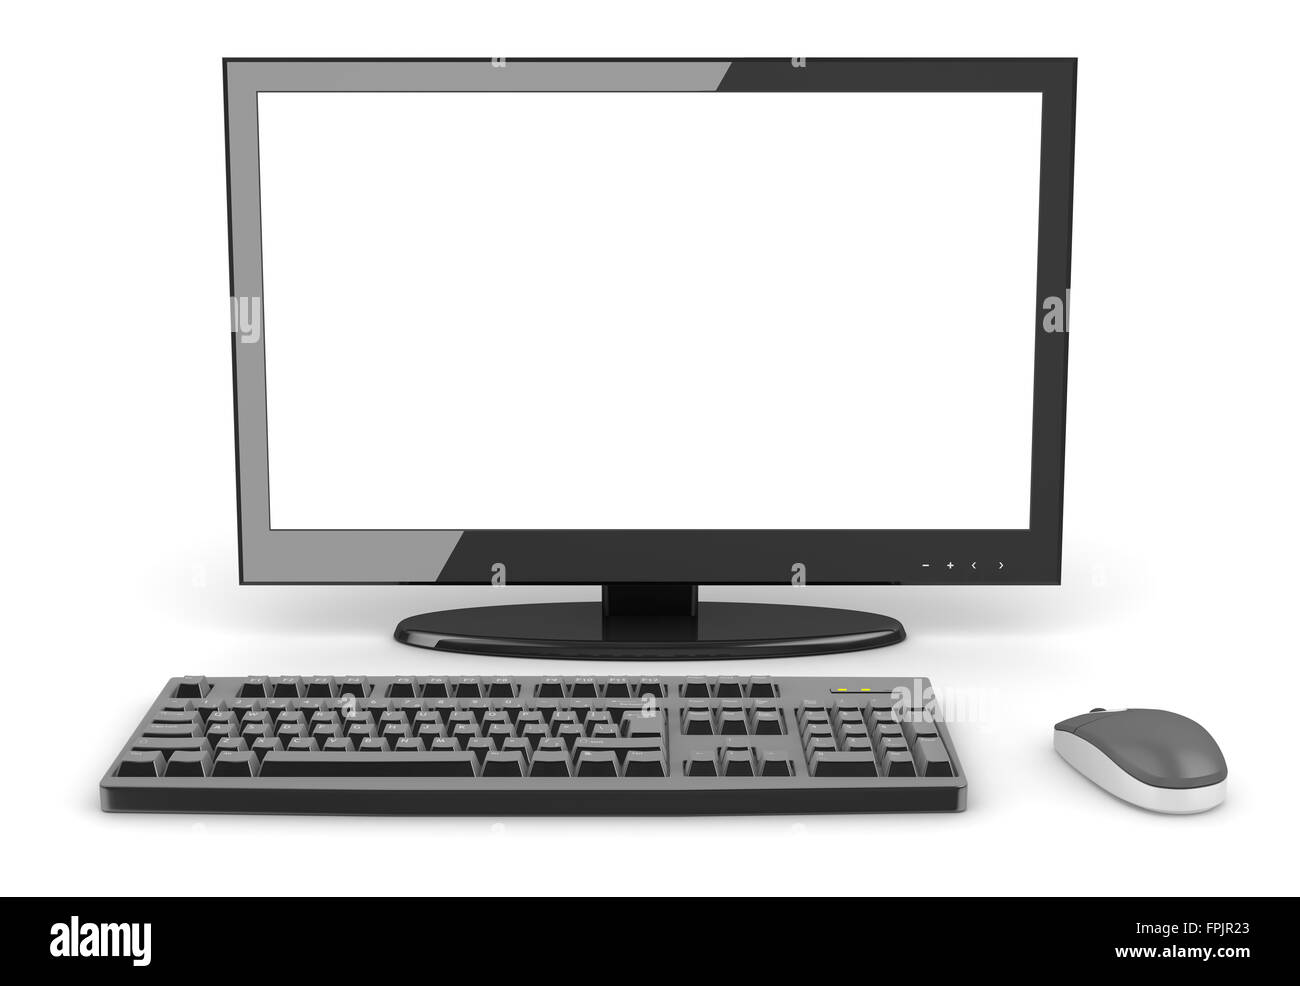 PC de escritorio negro , este es un equipo que genera y la imagen presentada en 3D. Foto de stock